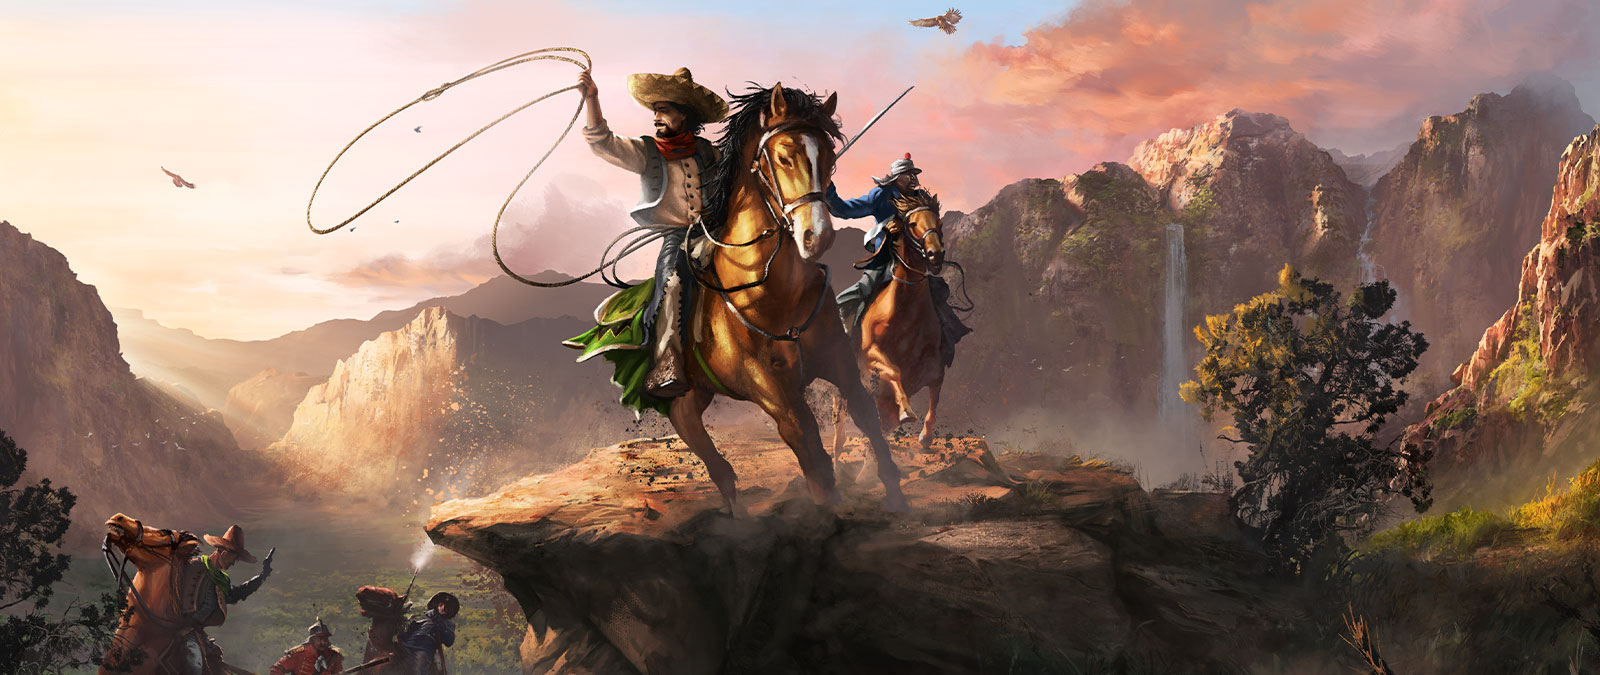 Twee personages zitten op hun paarden in een grote vallei met een lasso en een zwaard.